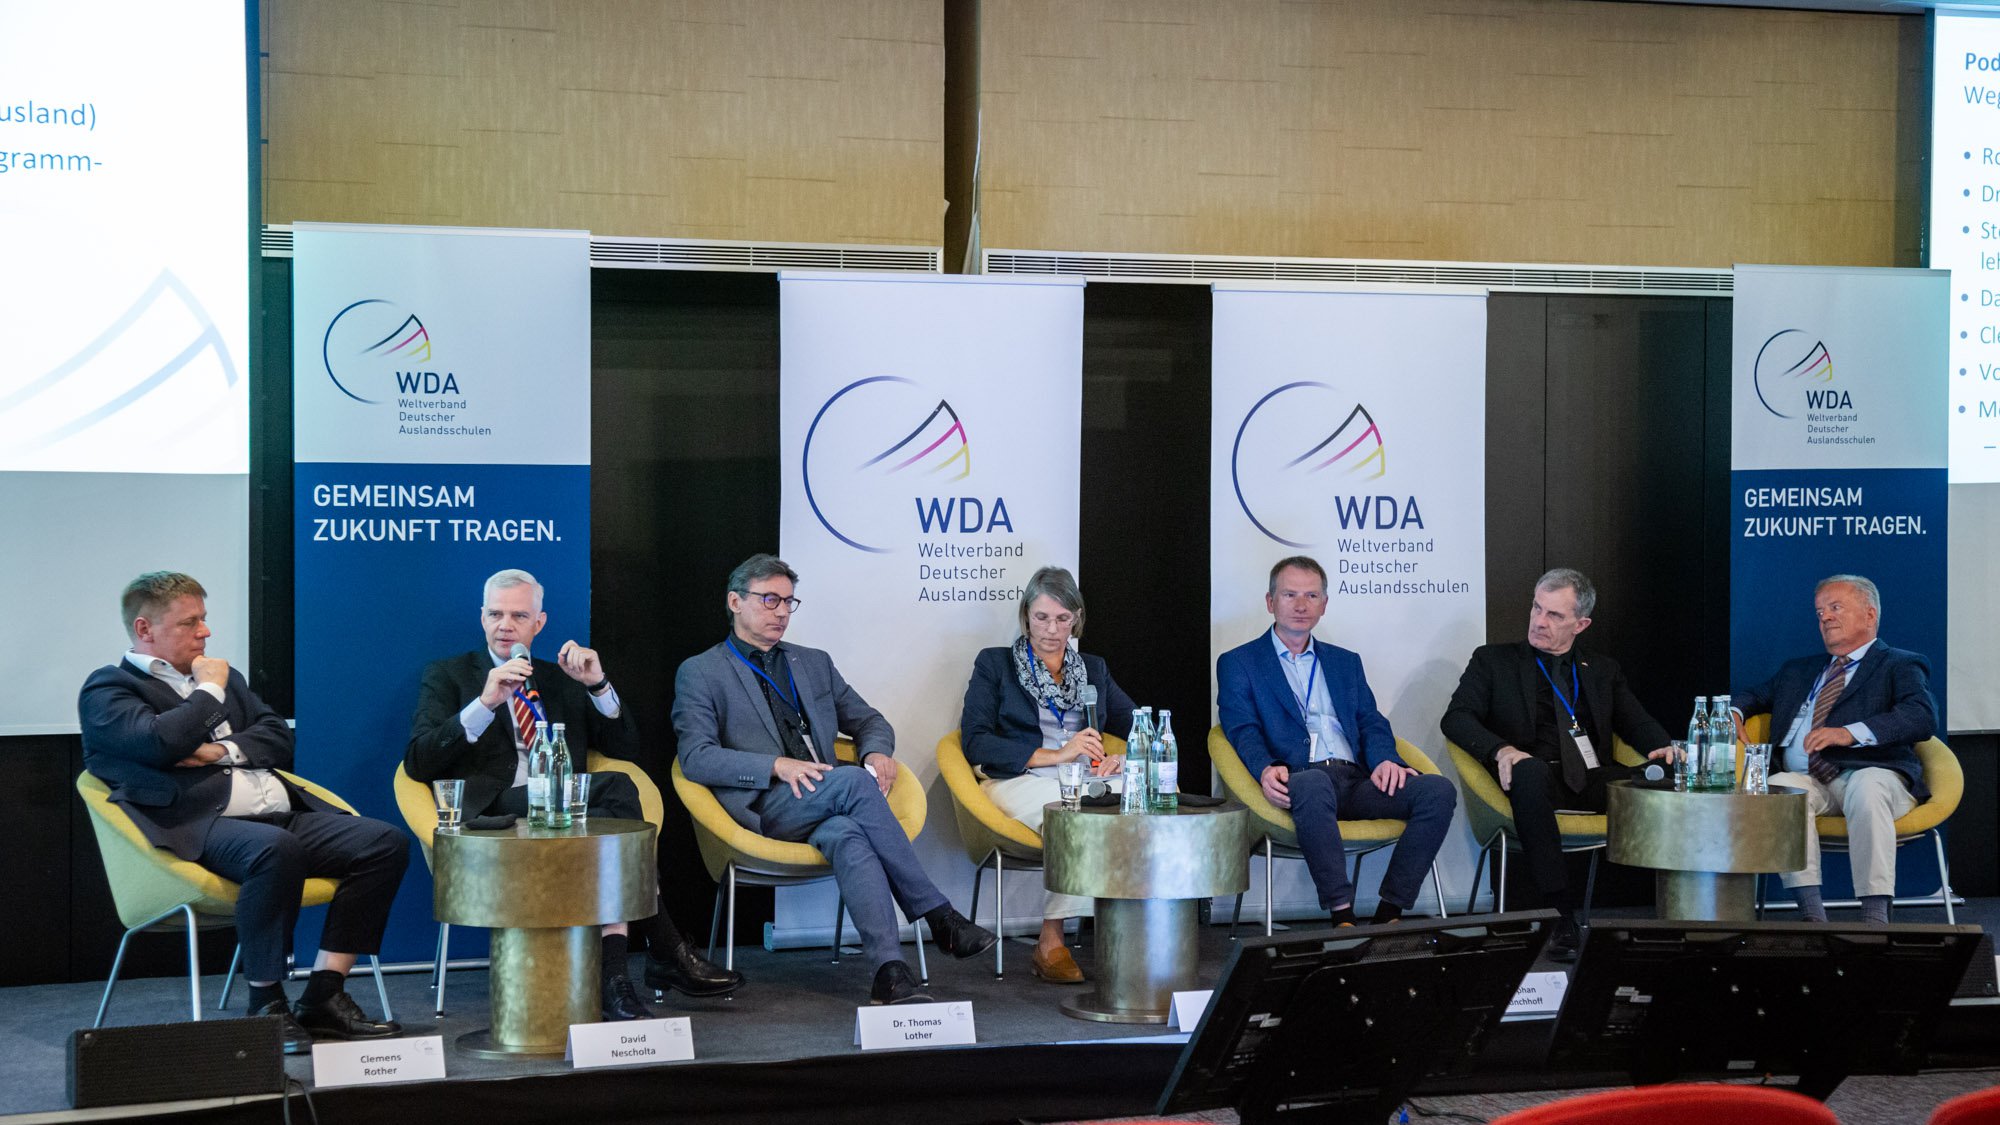 WDA-Symposium: Wege zur Stärkung der Deutschen Auslandsschulen durch Zusammenarbeit cover